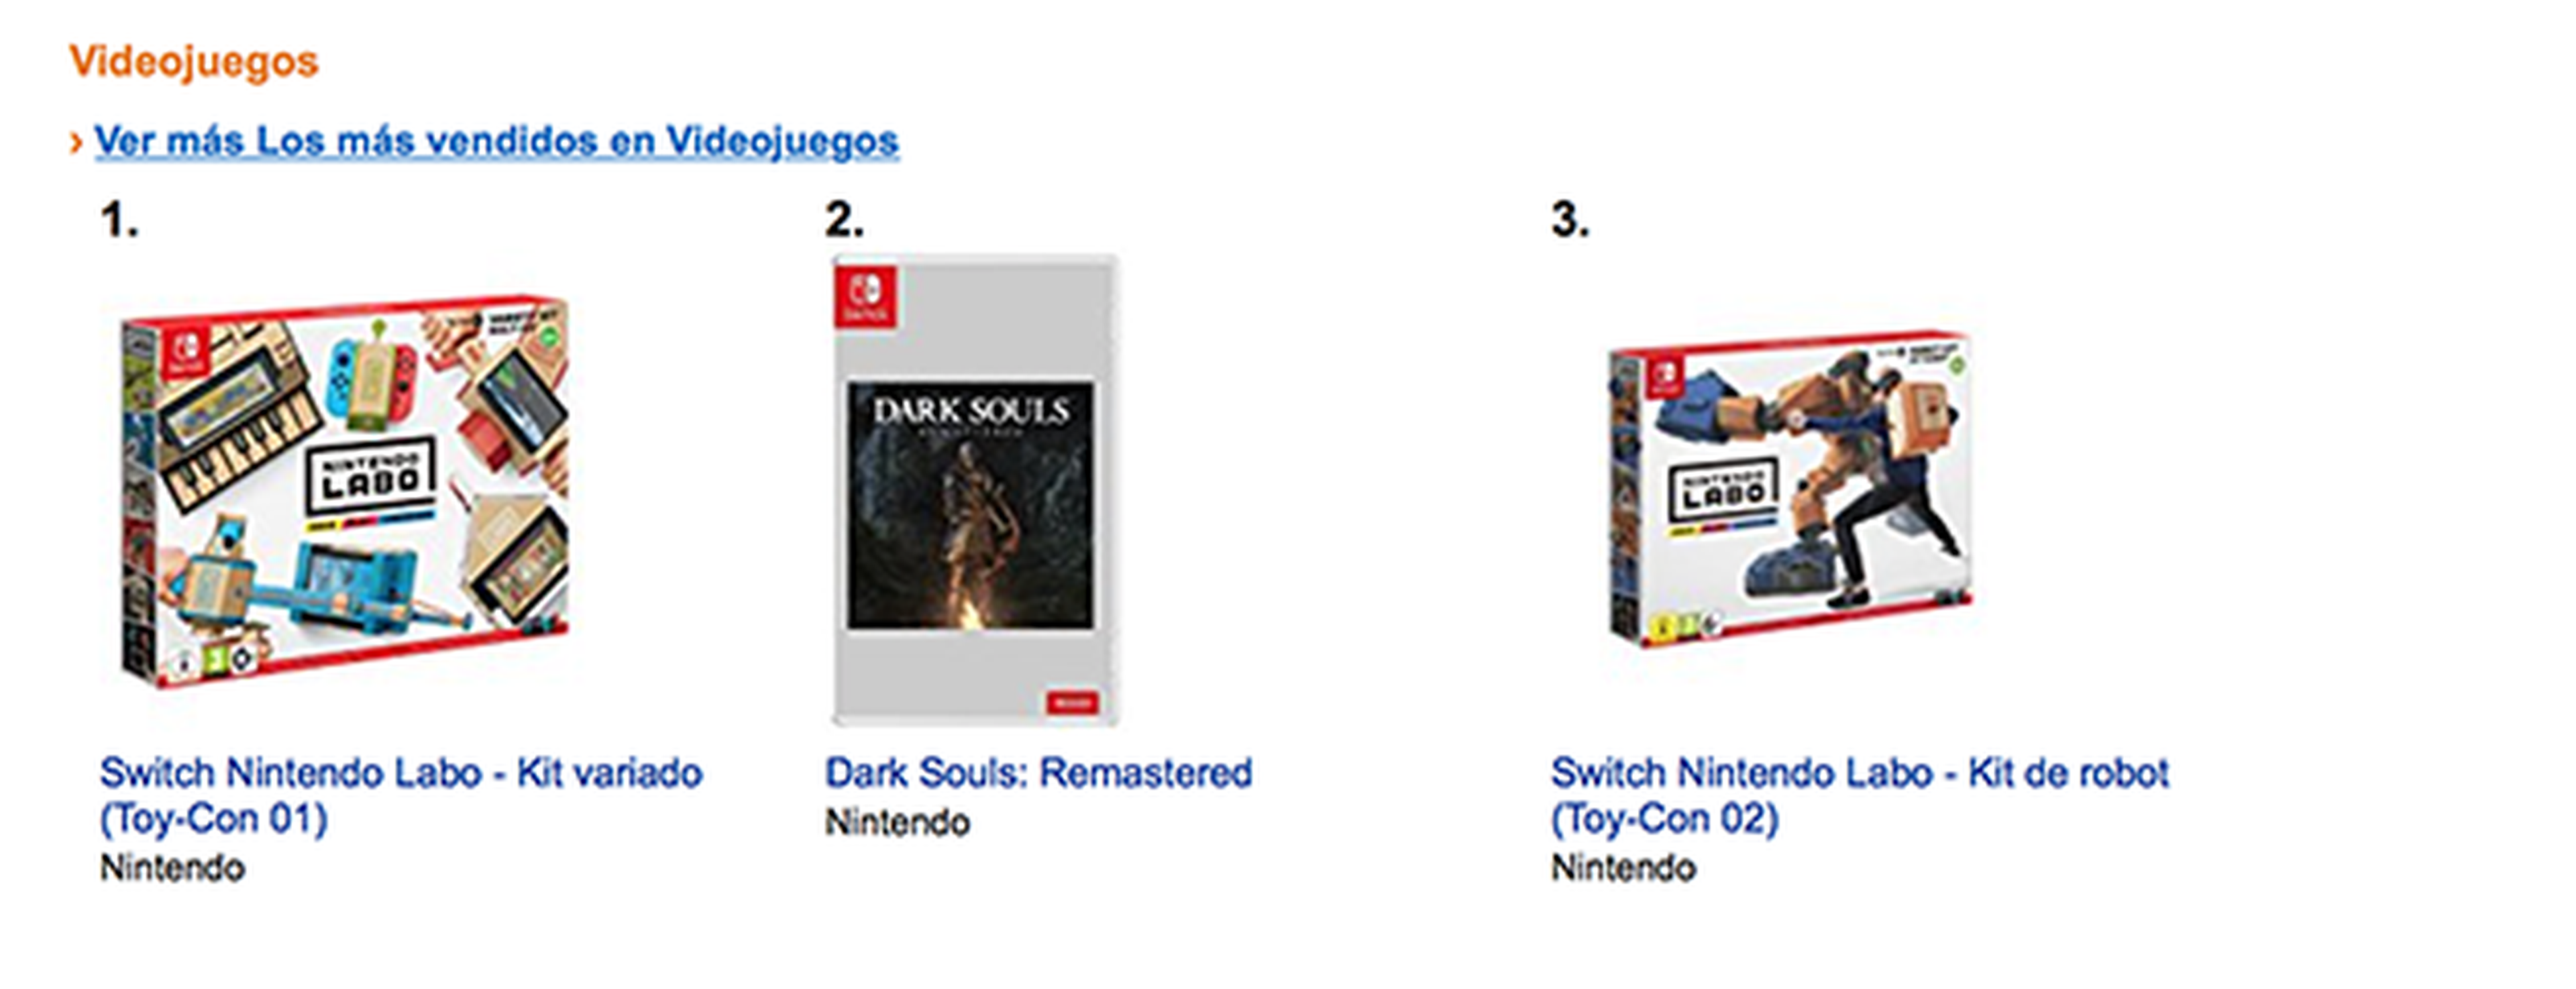 Nintendo Labo es lo más vendido en Amazon